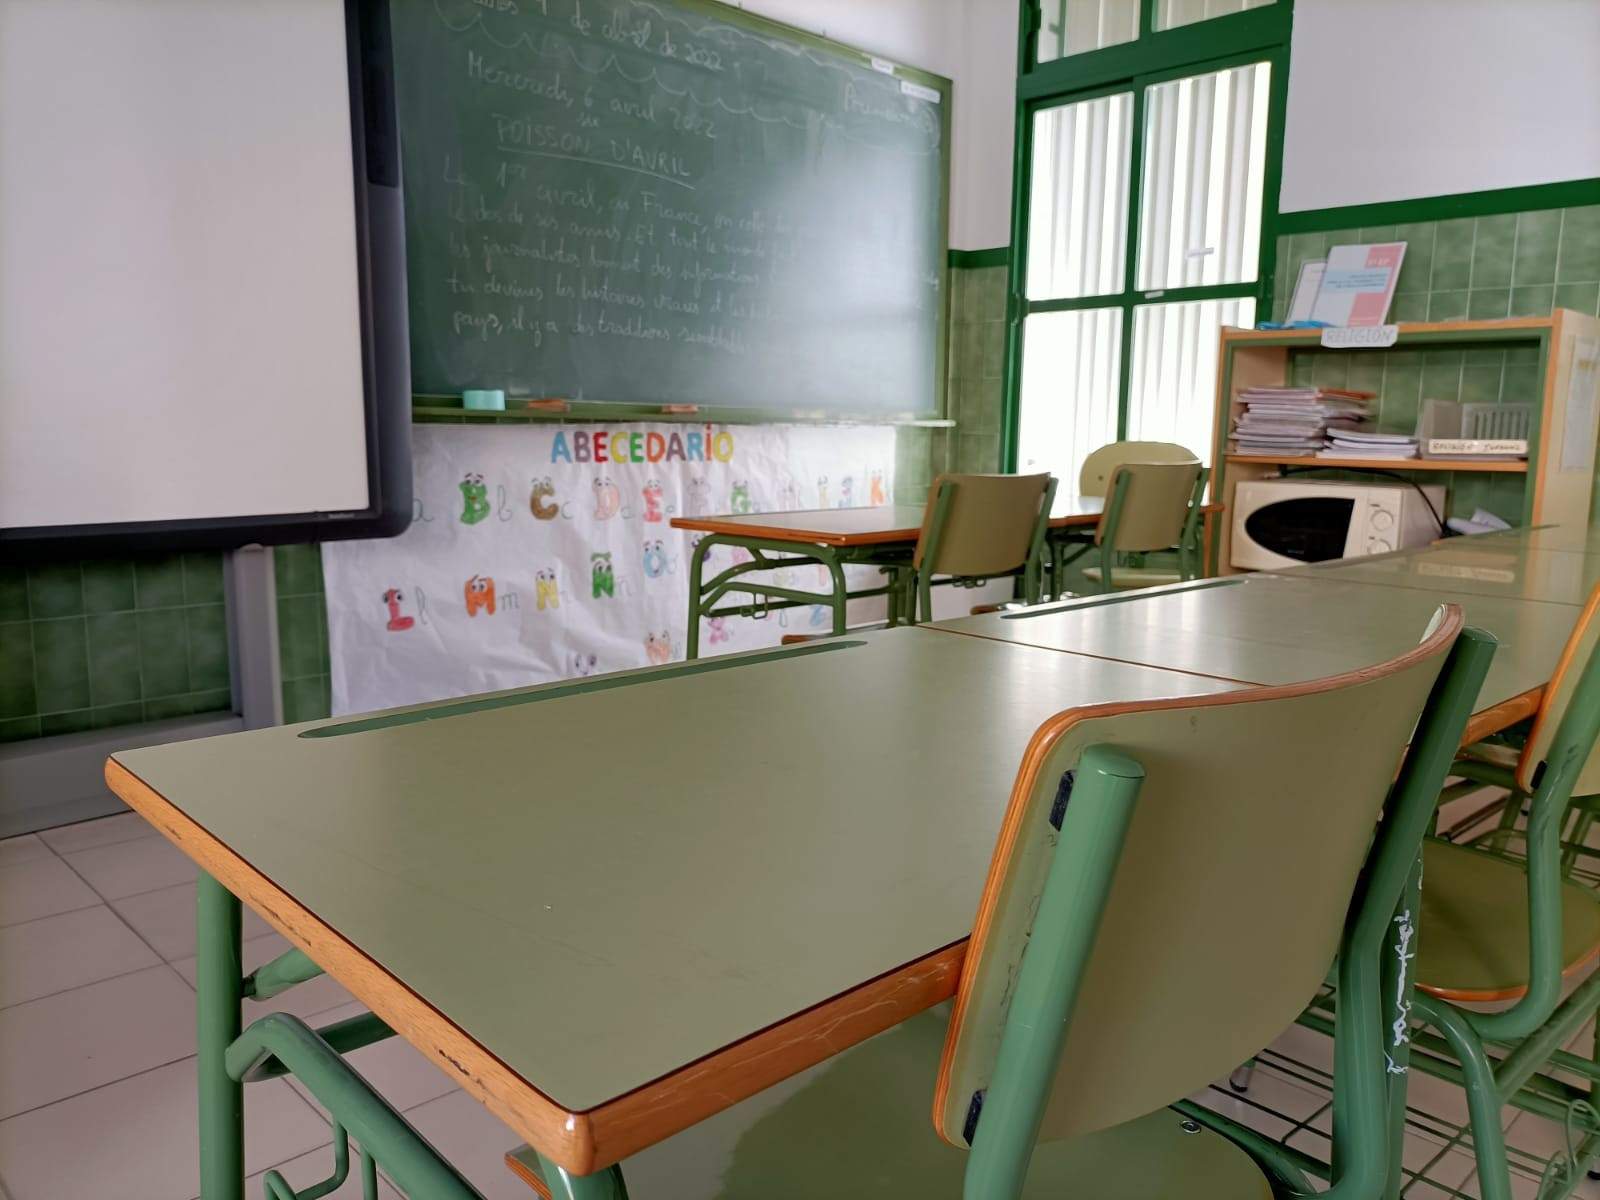 Juez cita a padres y al director de un colegio de Almería donde se investigan presuntos malos tratos de un maestro